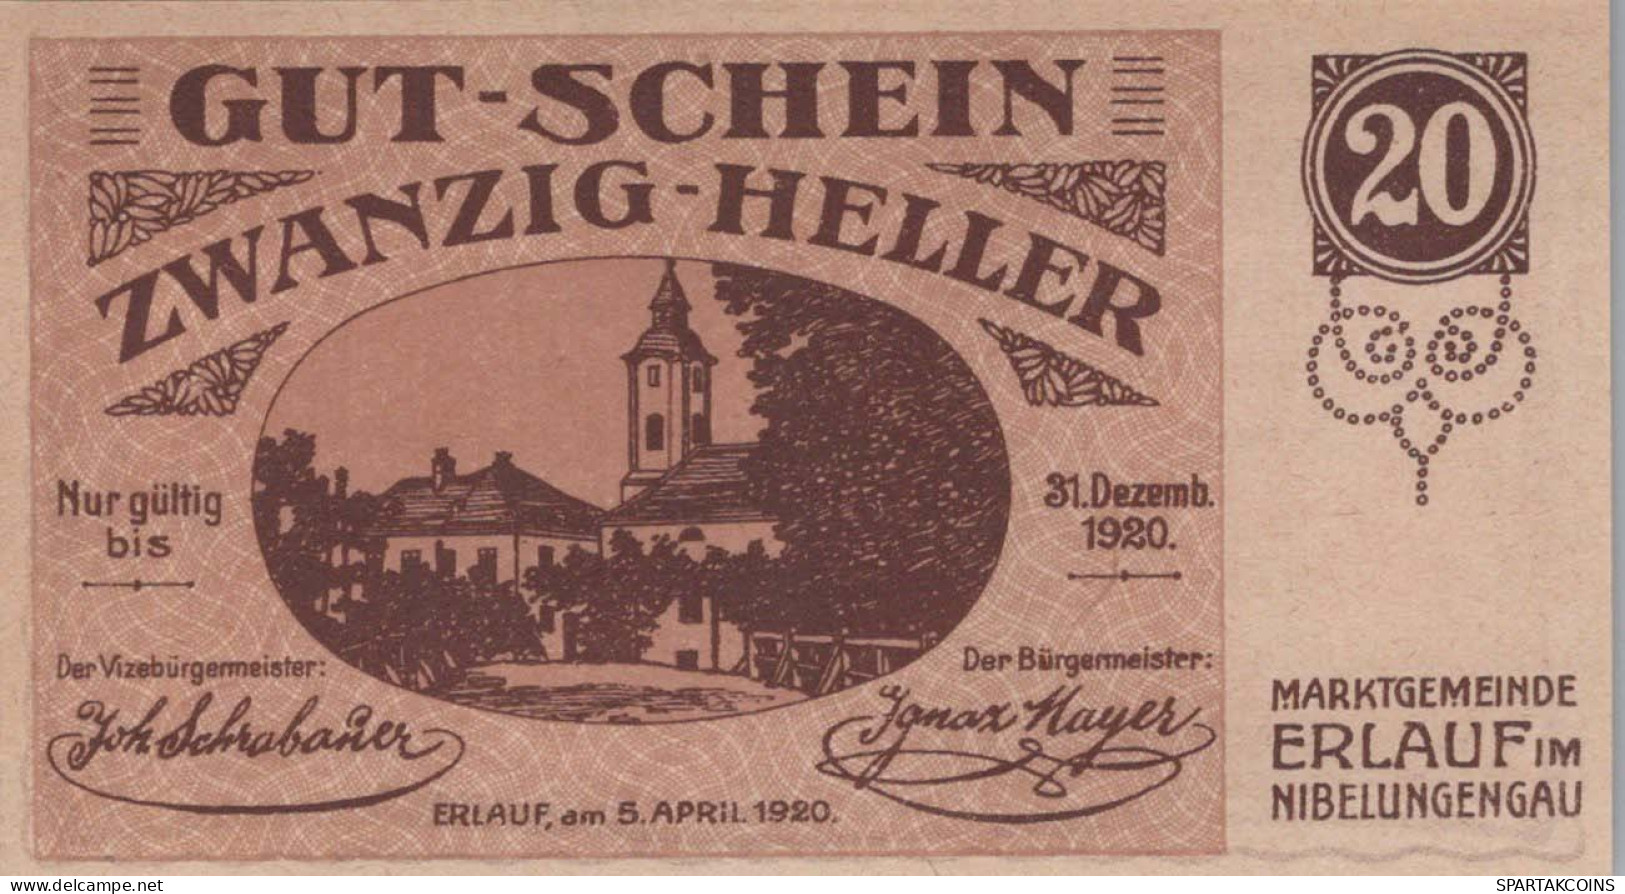 20 HELLER 1920 Stadt ERLAUF IM NIBELUNGENGAU Niedrigeren Österreich Notgeld Papiergeld Banknote #PG540 - [11] Local Banknote Issues